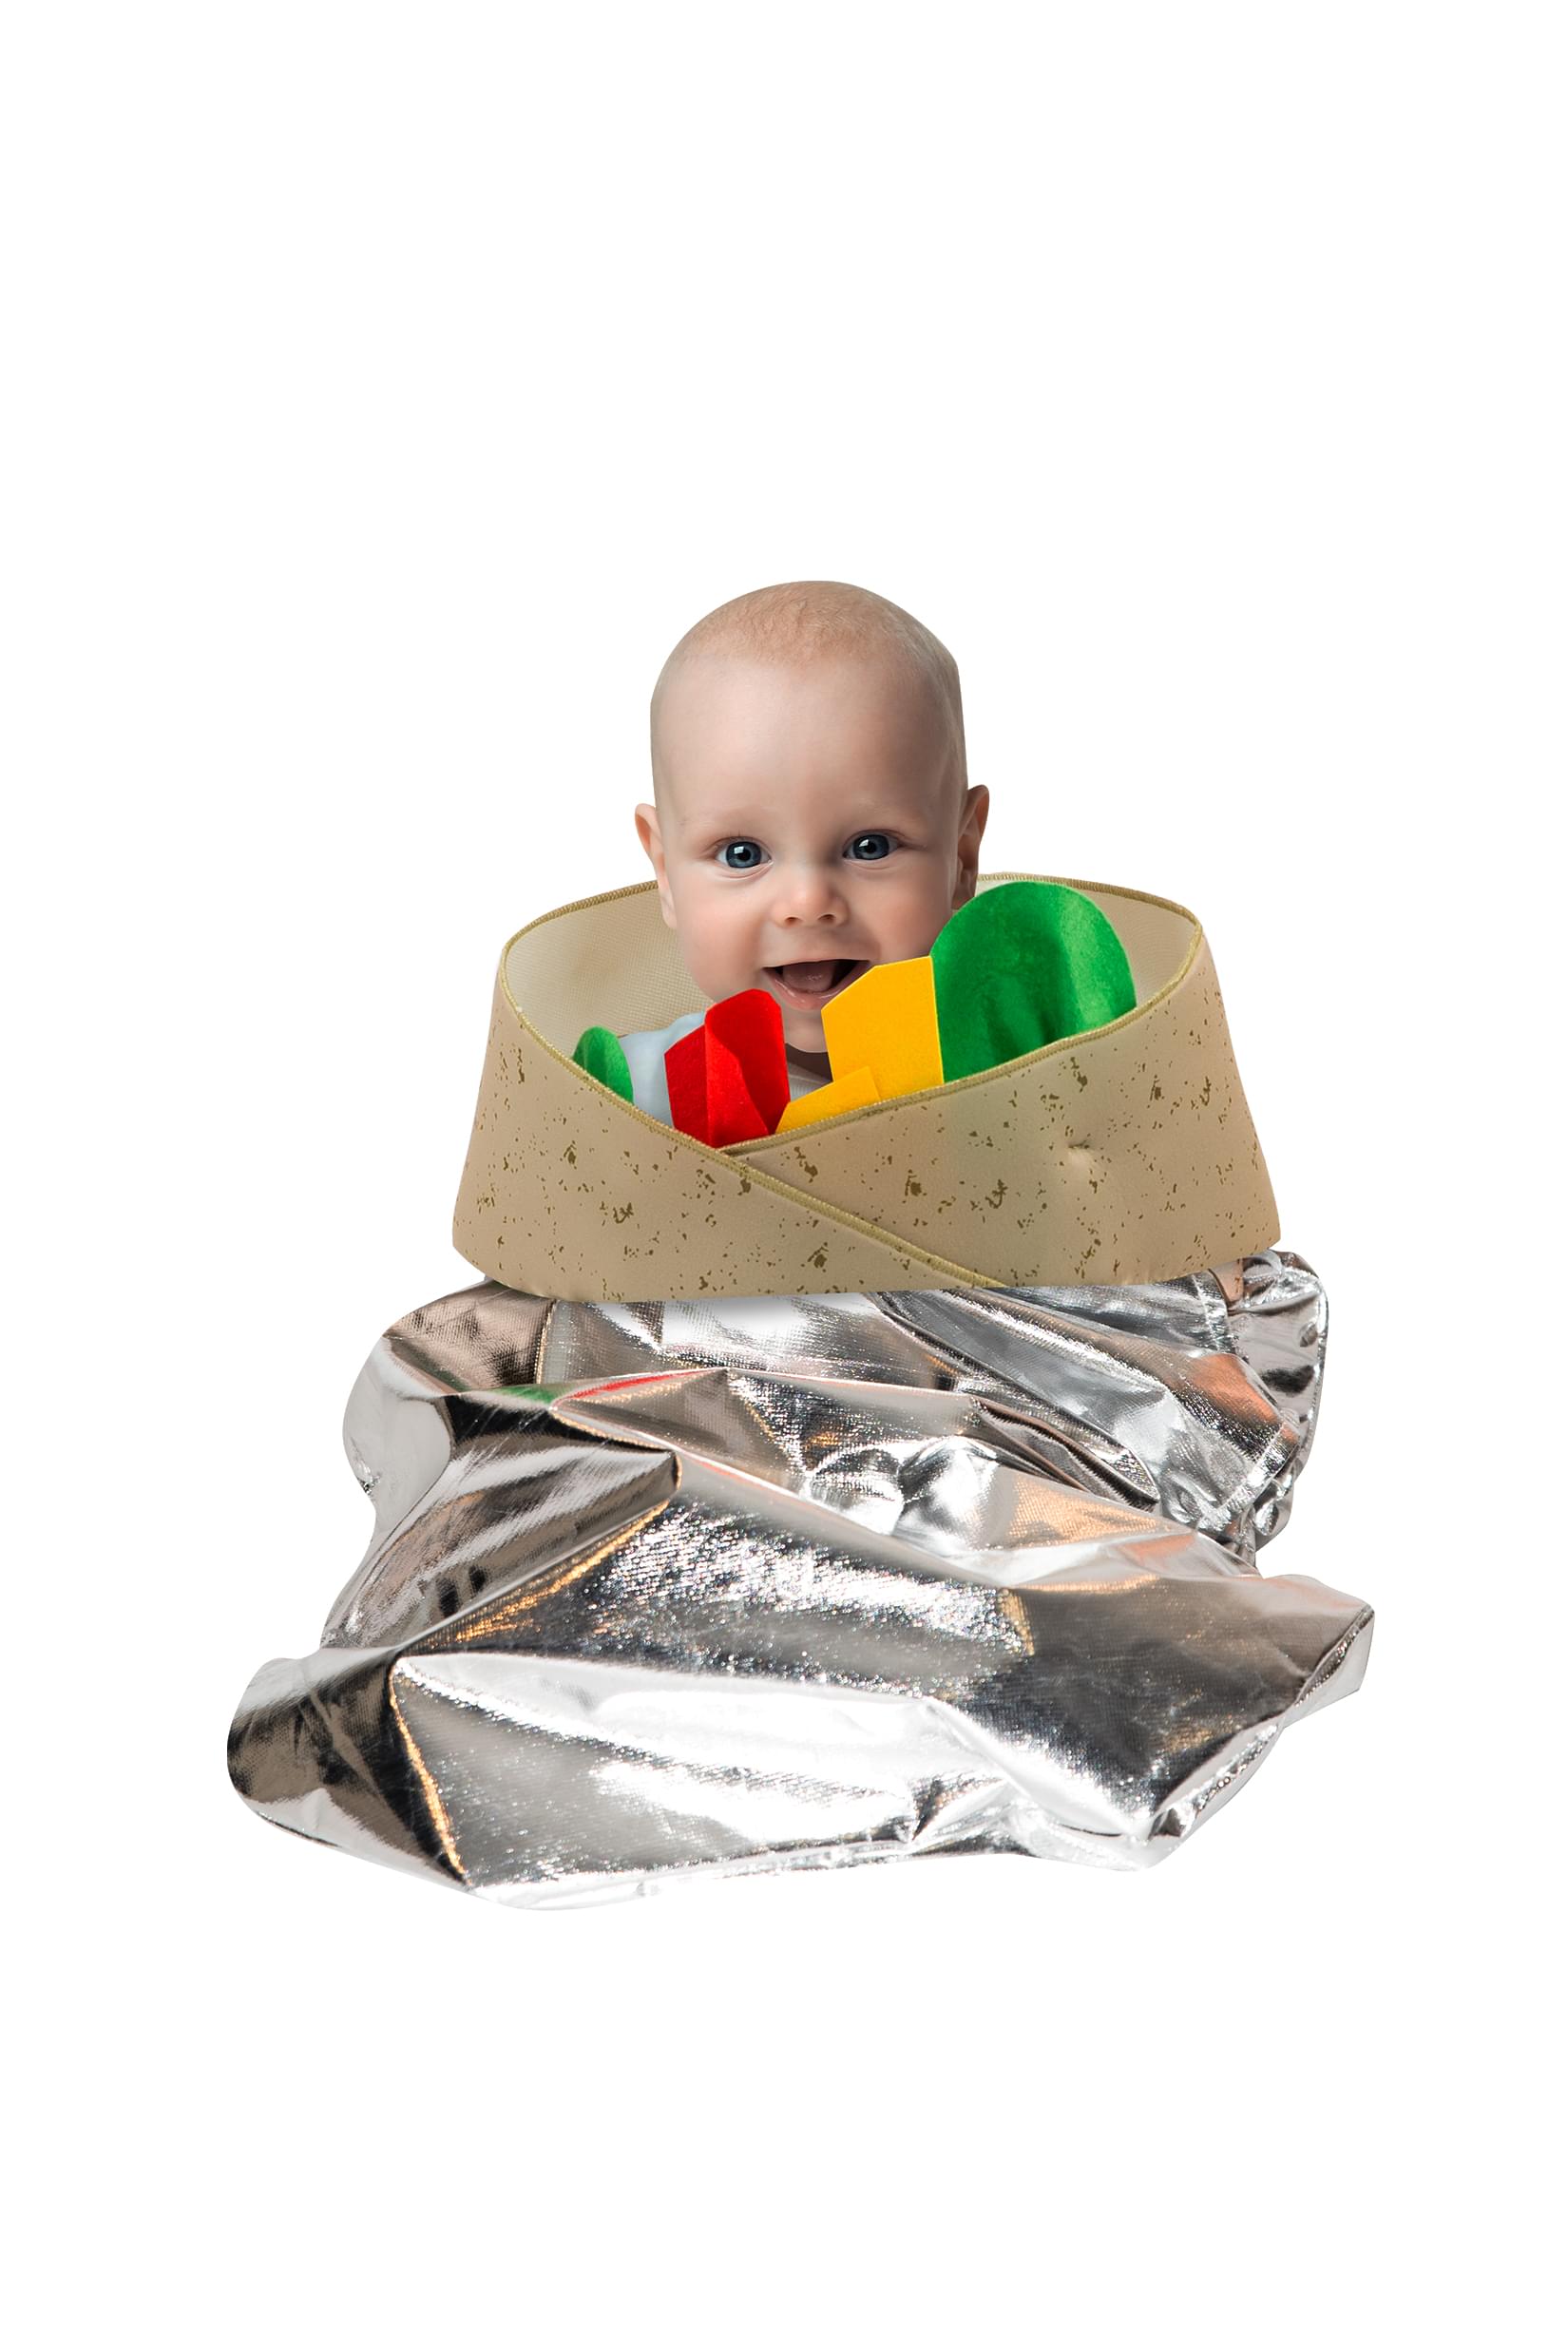 Toynk Burrito Costume For Kids, Easy Pull Over Design